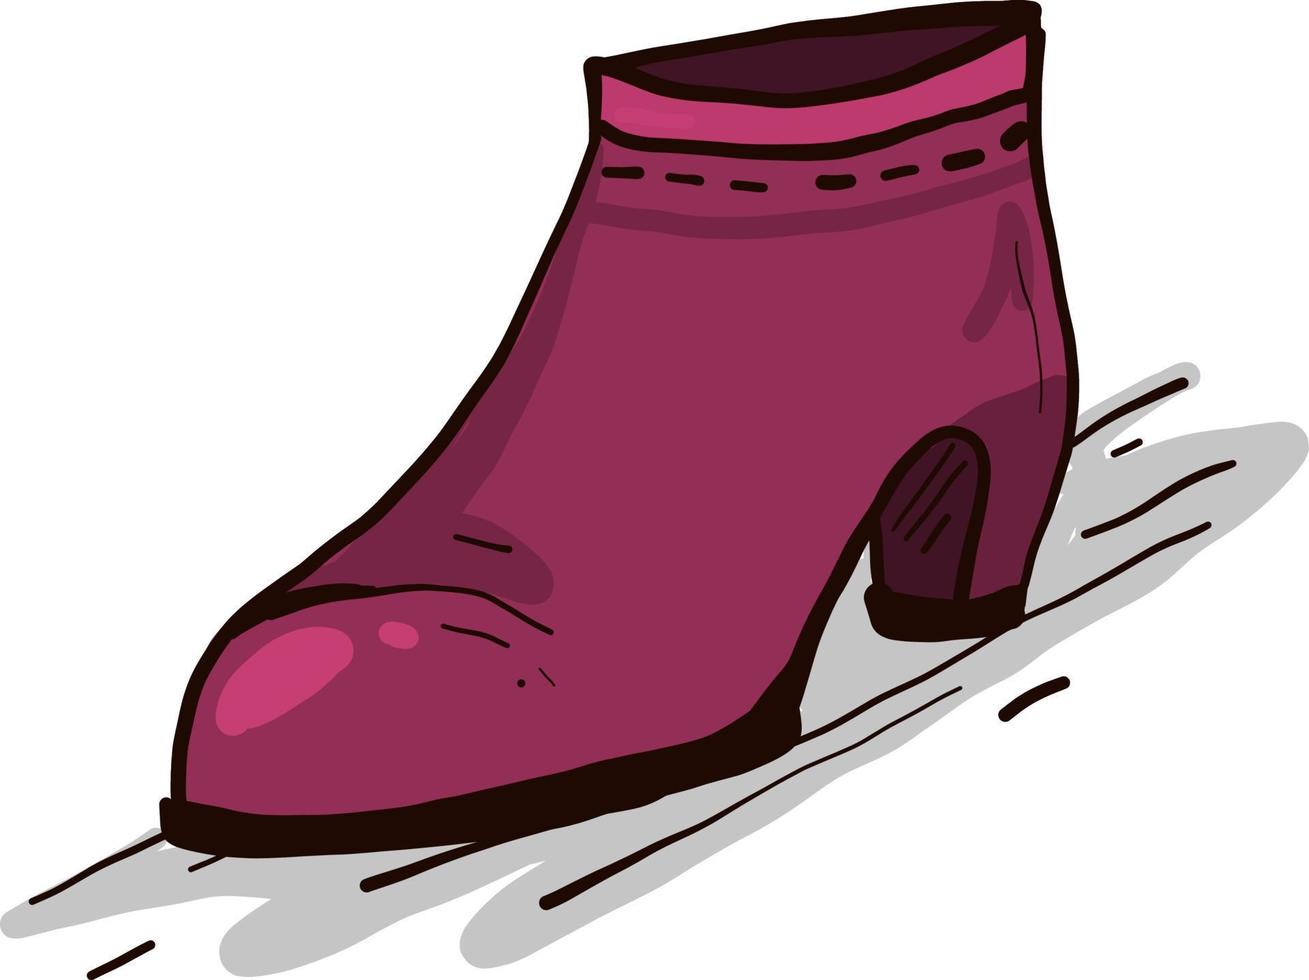 Zapato rosa , ilustración, vector sobre fondo blanco.